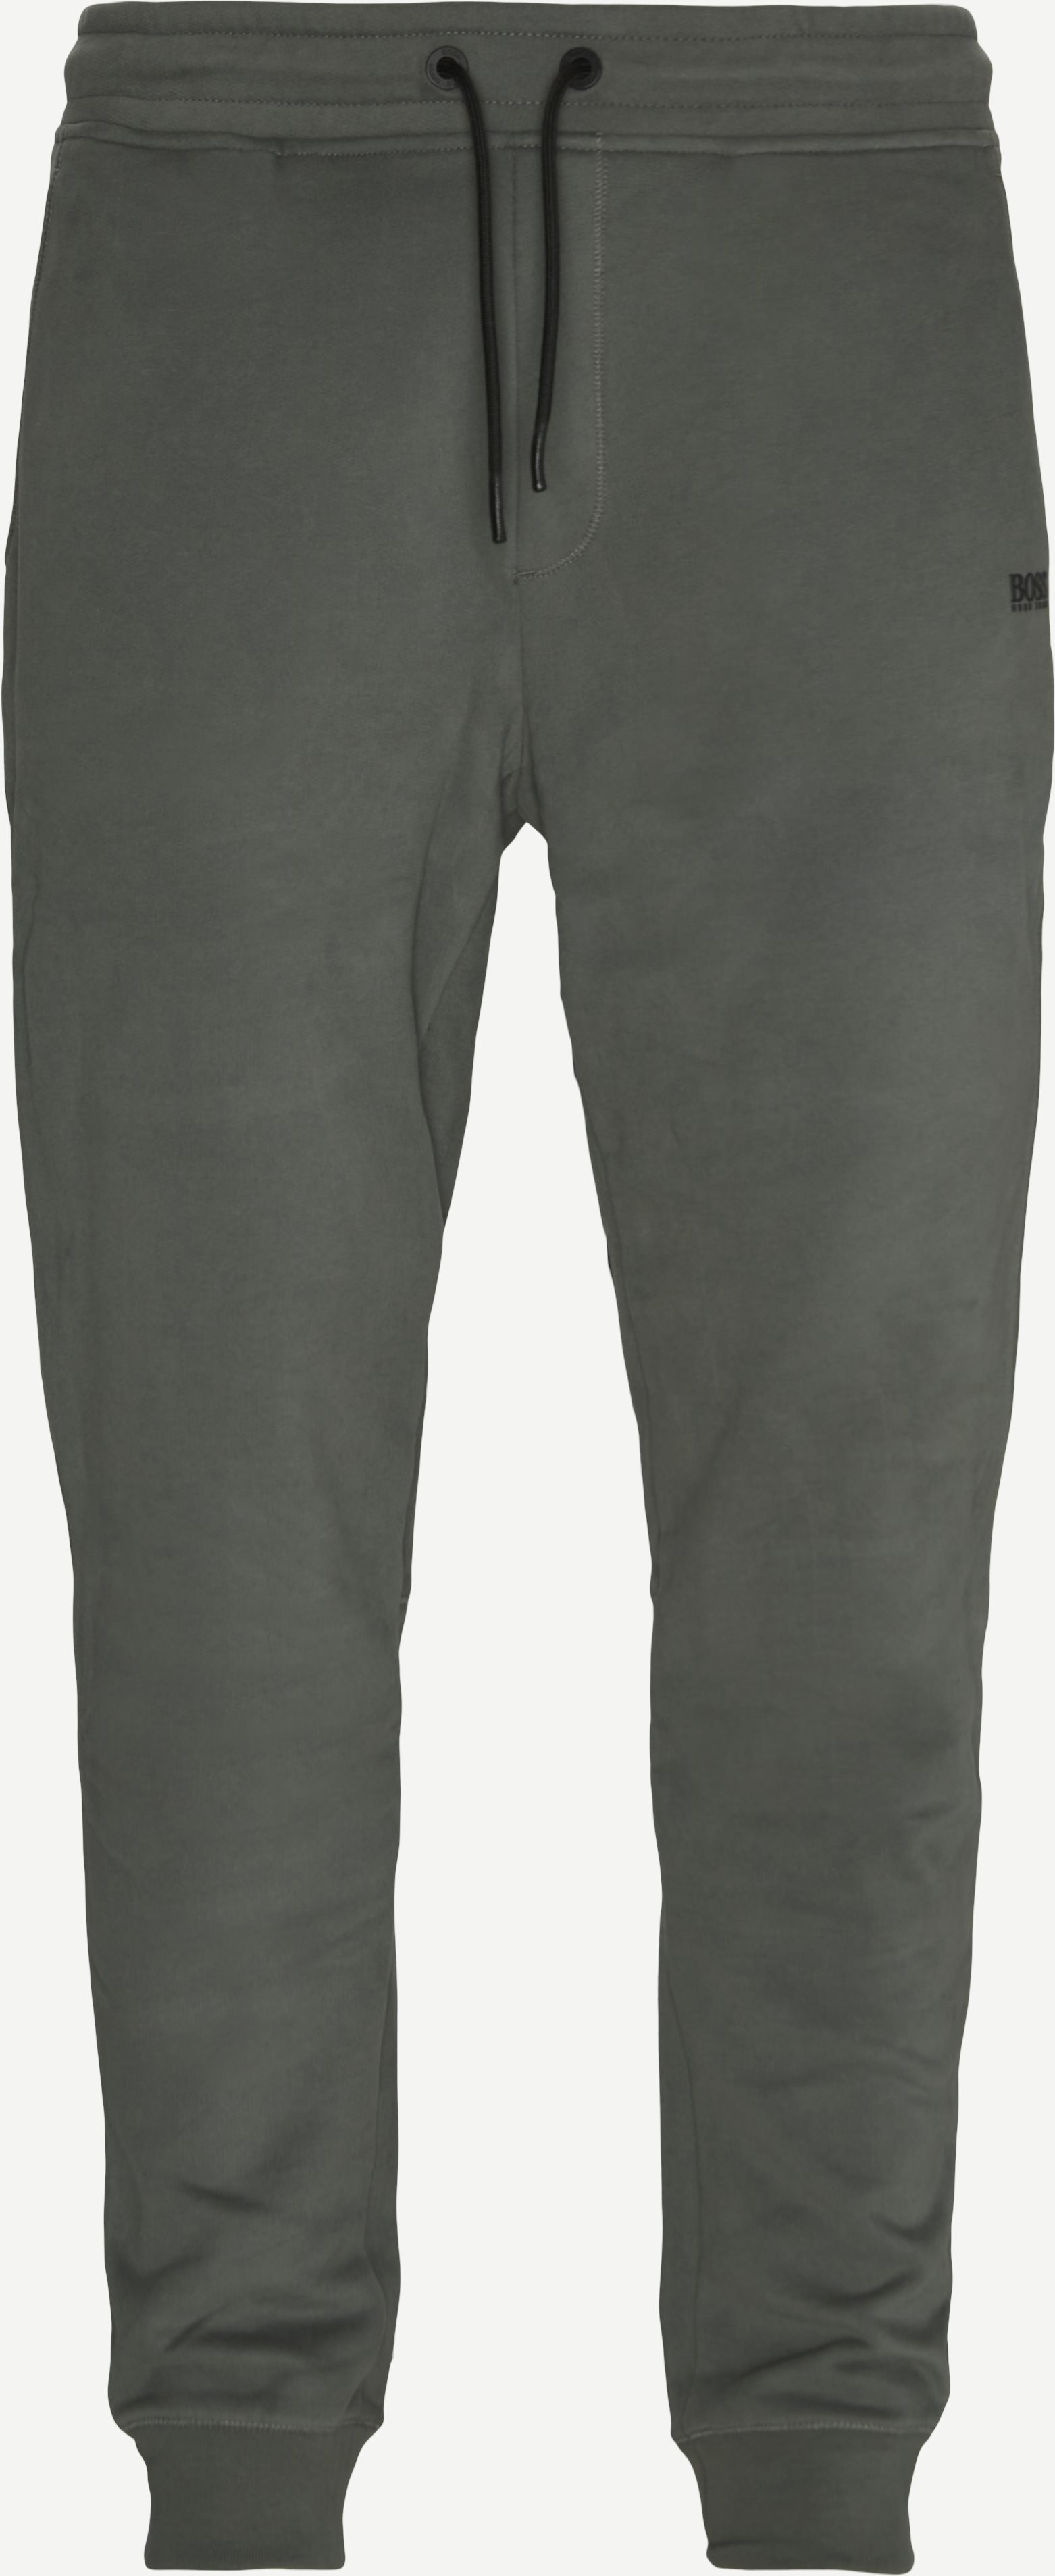 Skeevo Sweatpants - Trousers - Regular fit - Army